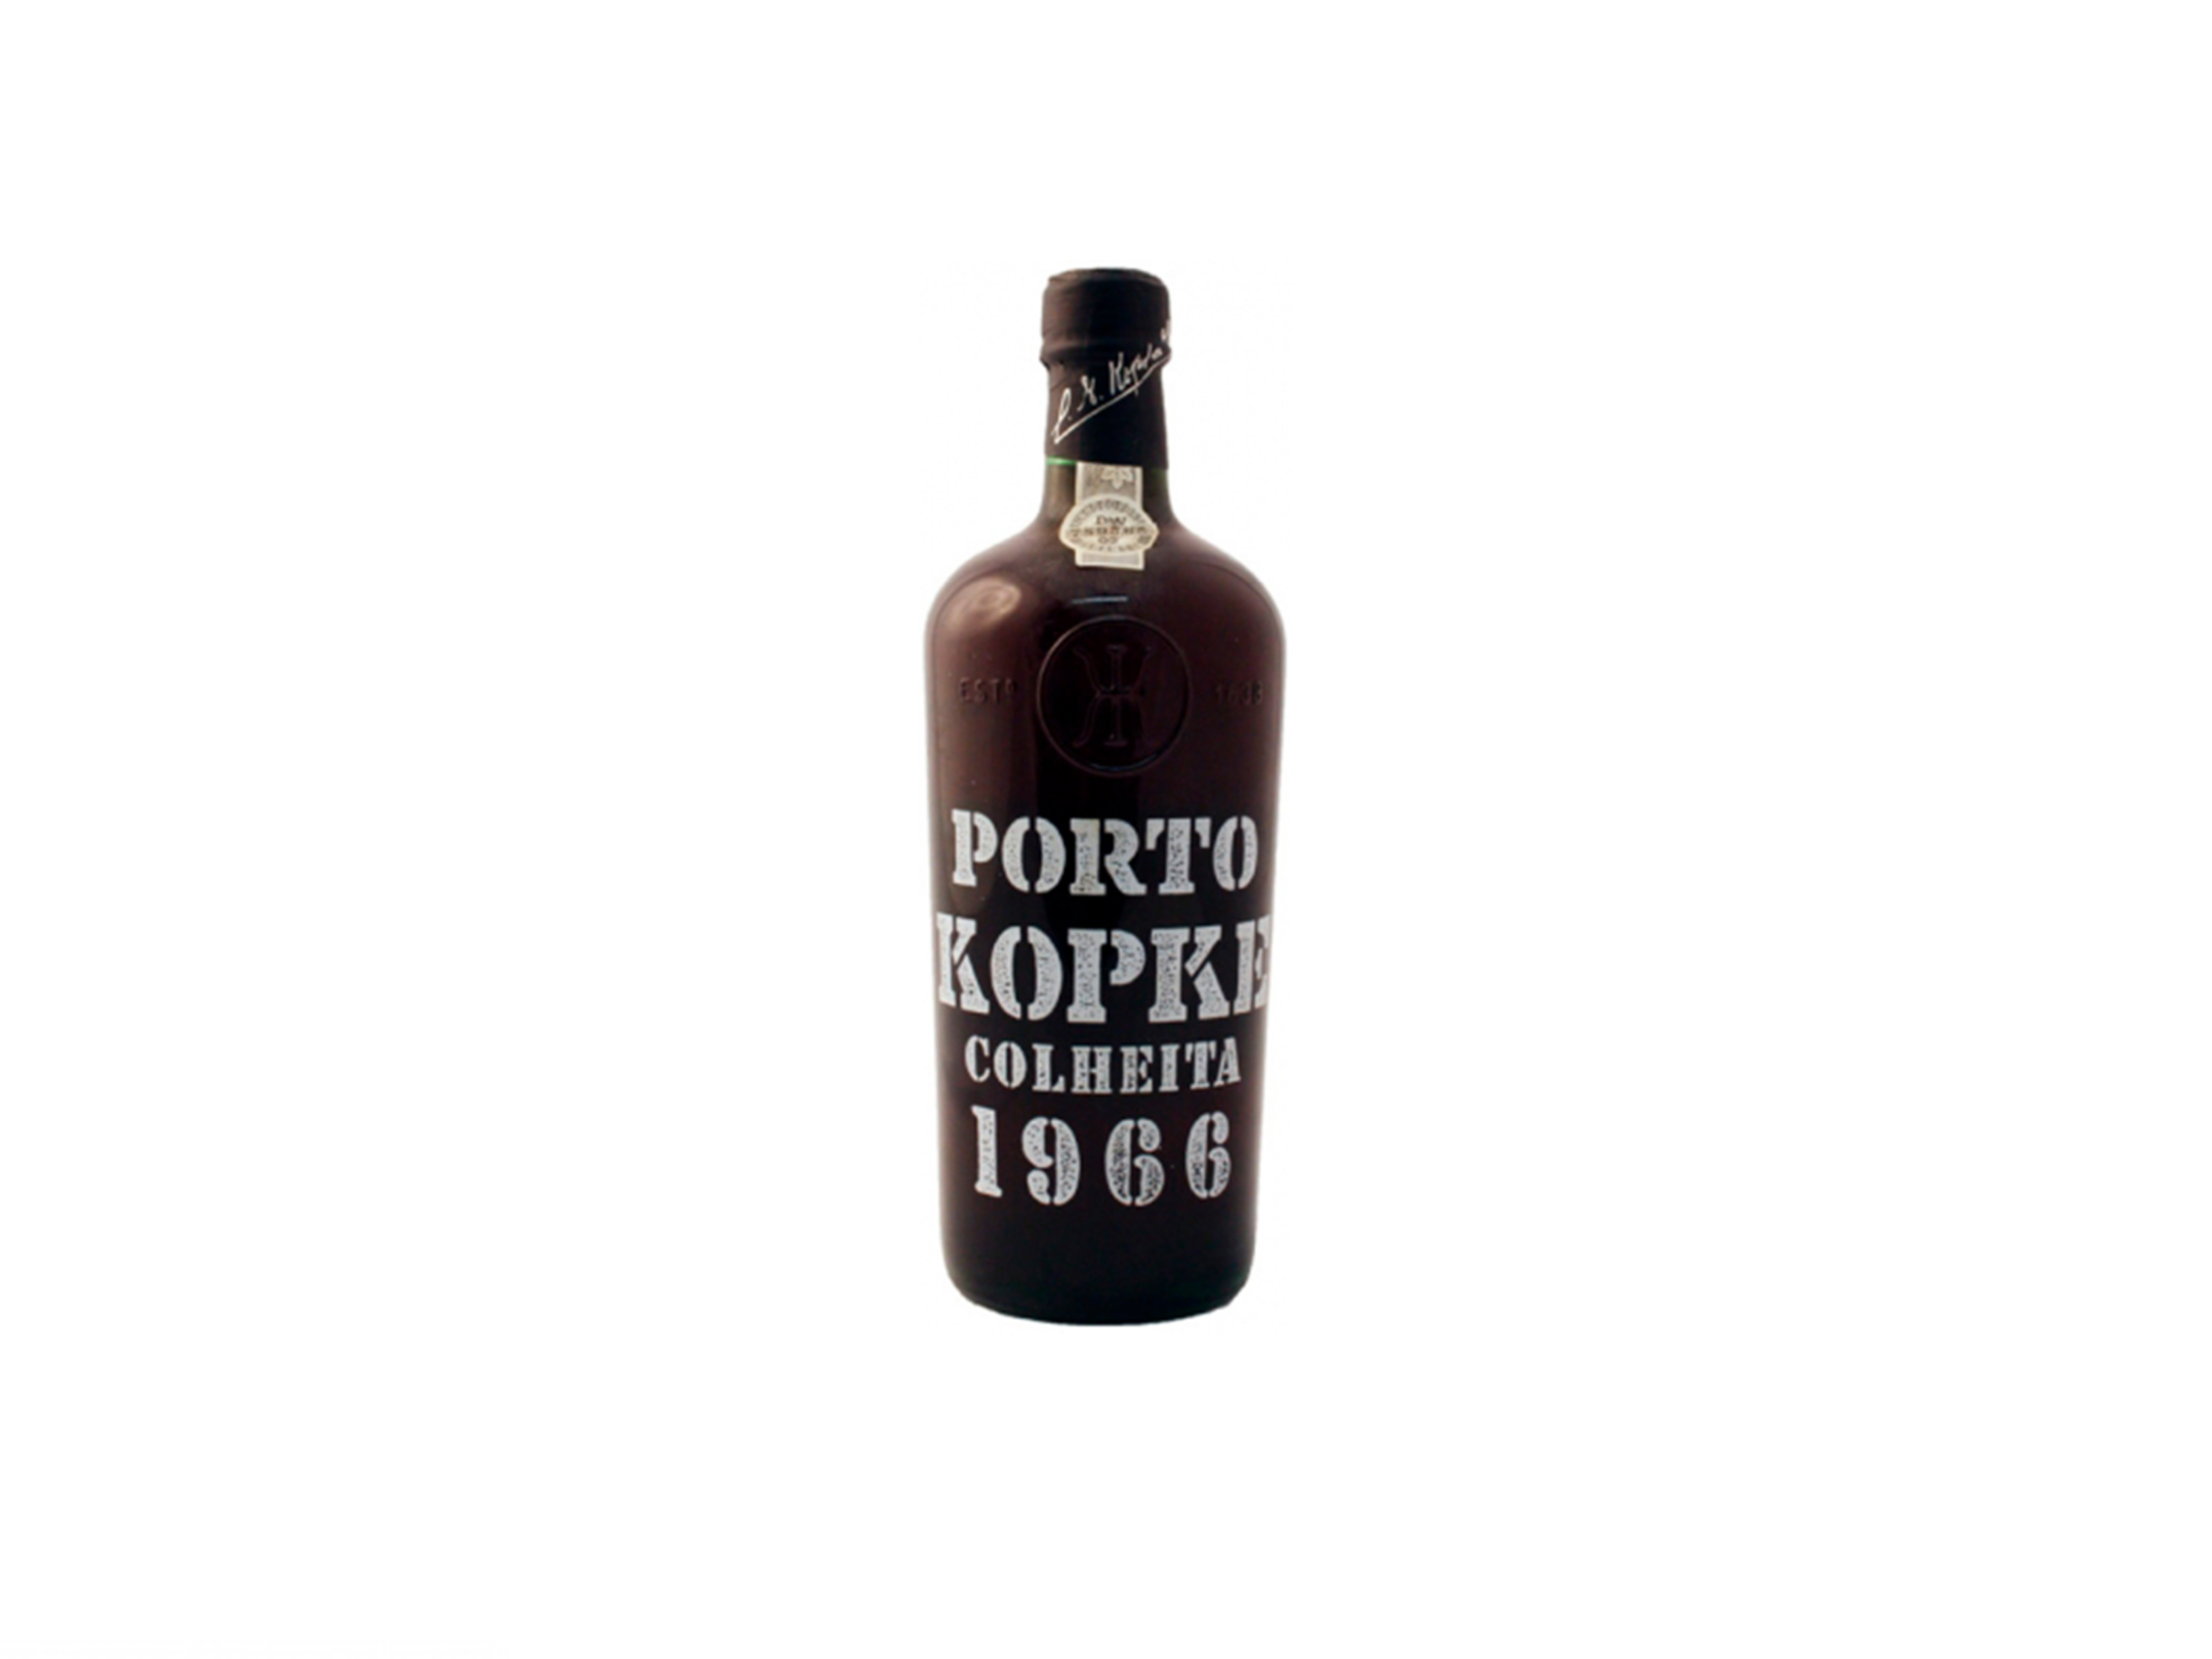 Porto Kopke Colheita 1966 (209,50€)